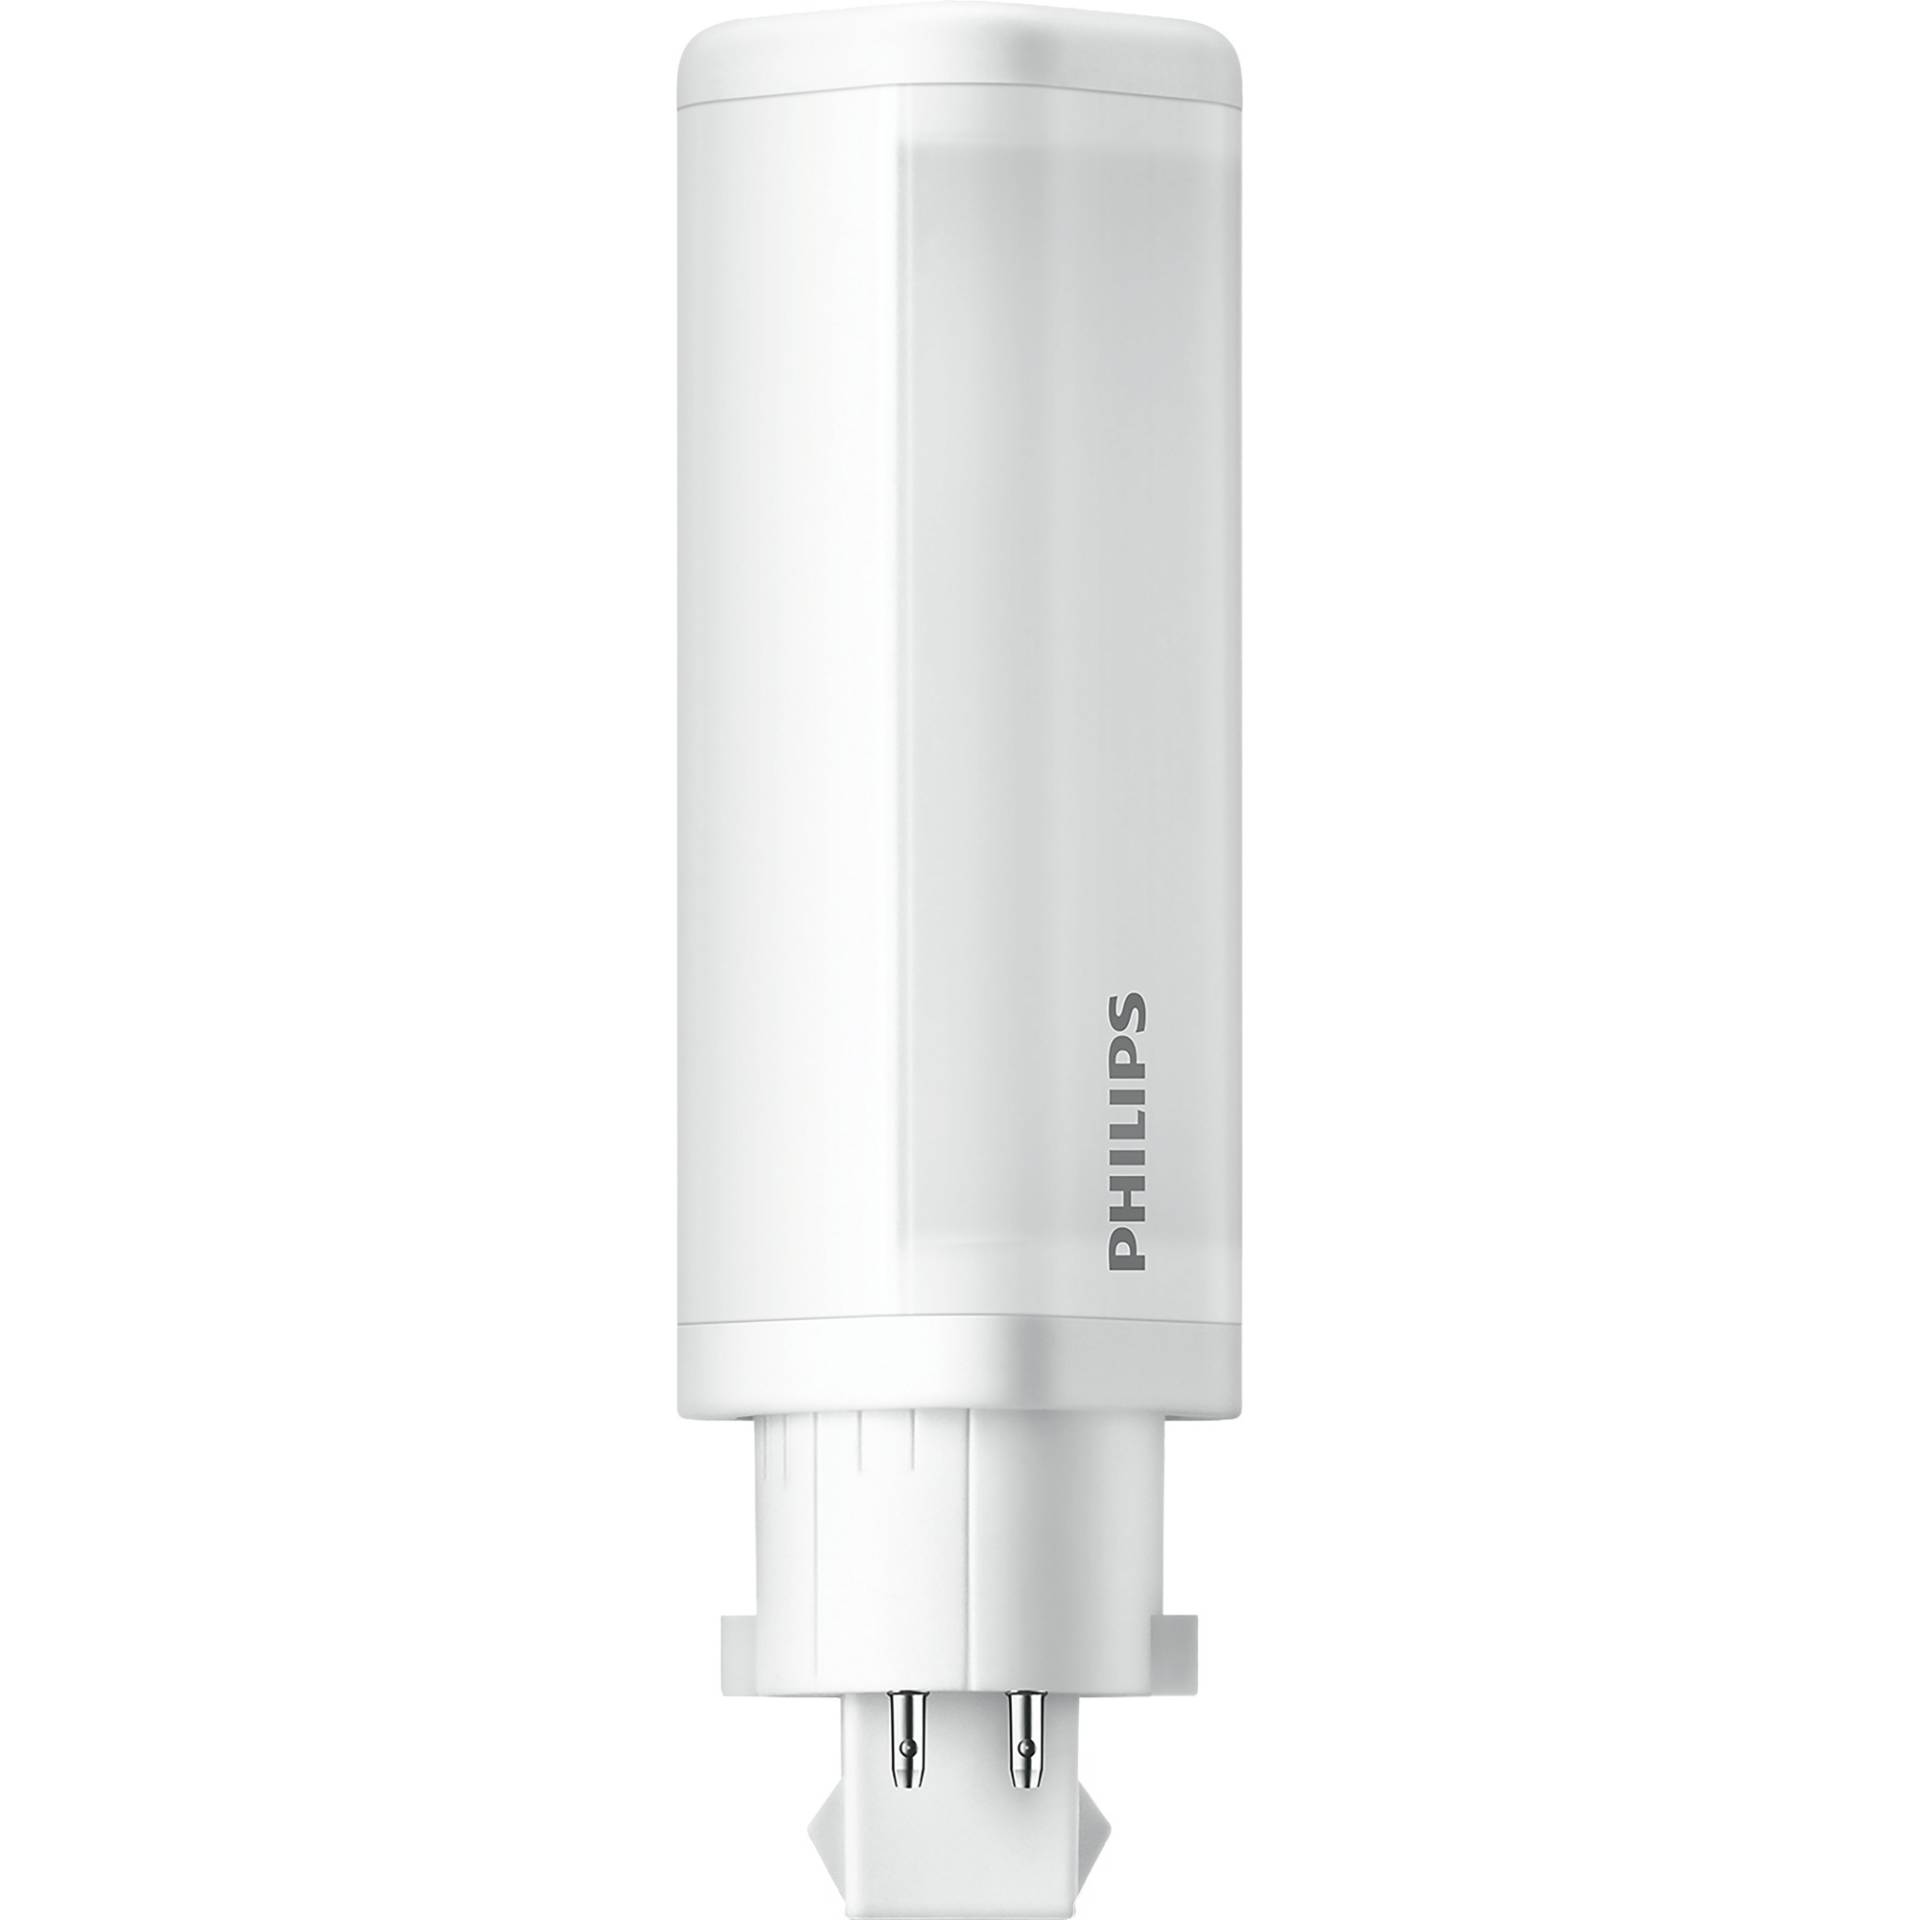 CorePro LED PLC 4,5W 840 4P G24q-1, LED-Lampe von Philips